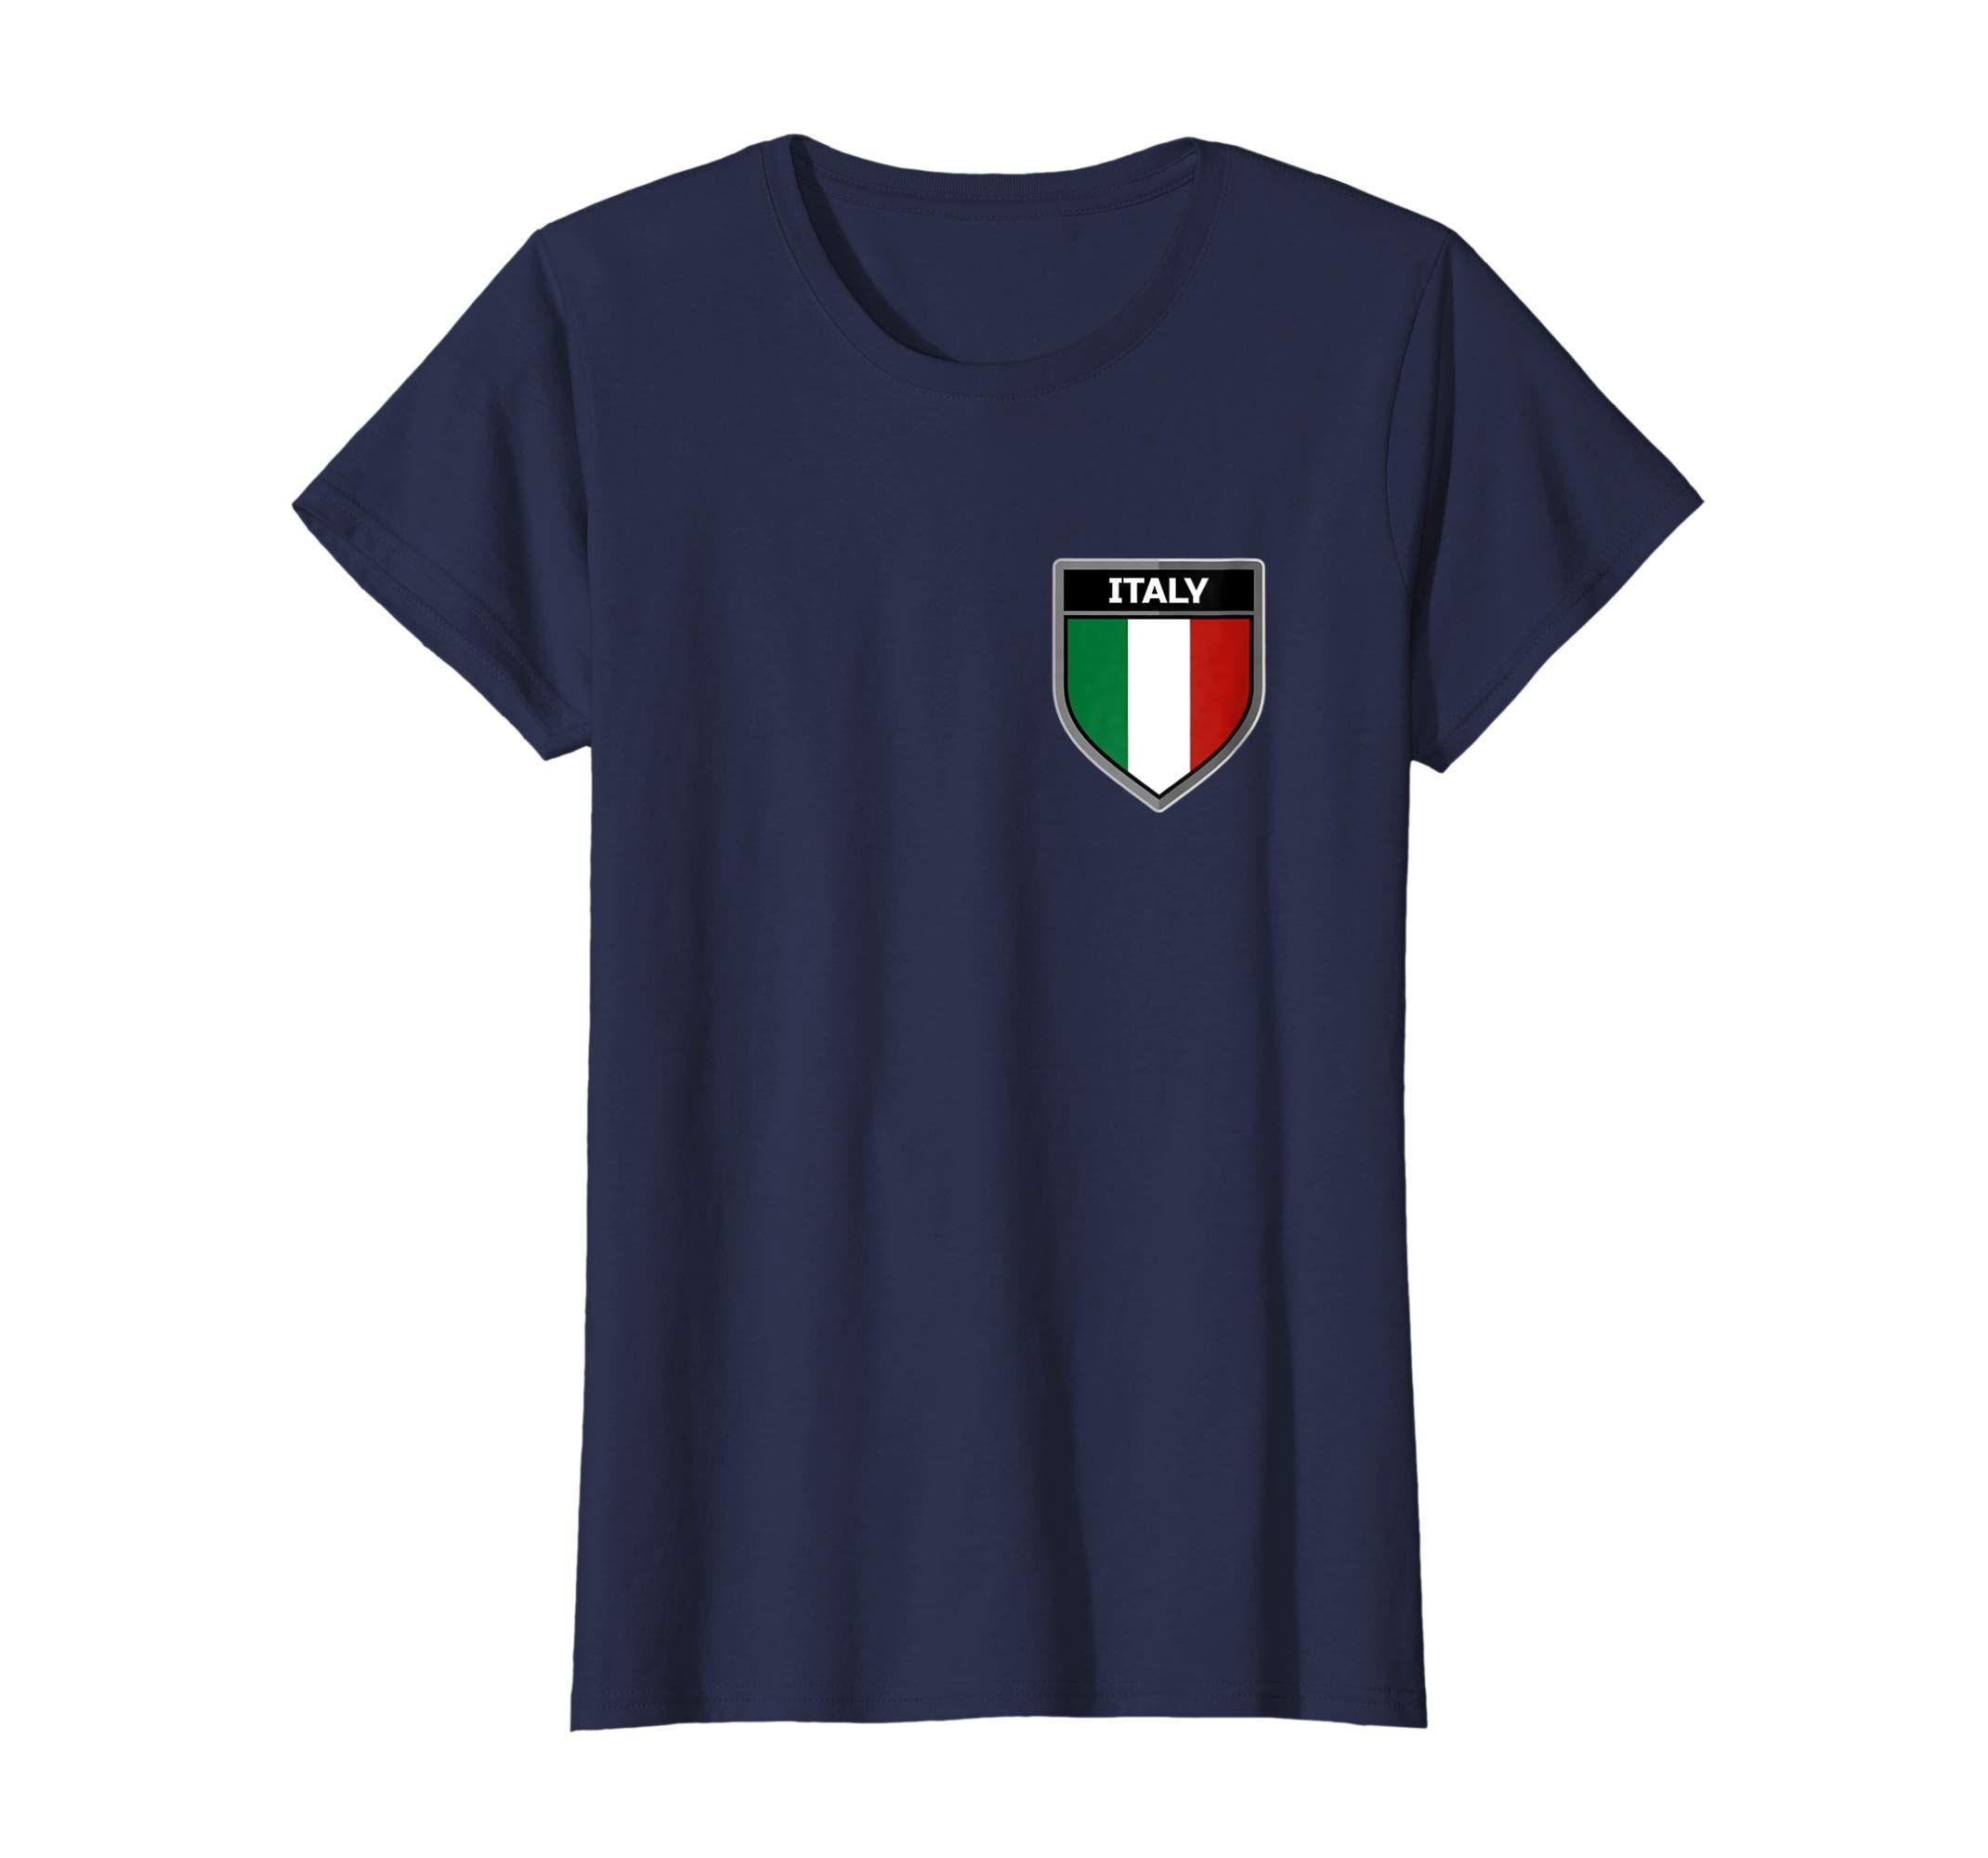 Italy Clothing Logo - Amazon.com: Vintage Italian Italy Rome Flag Shield Logo T Shirt ...